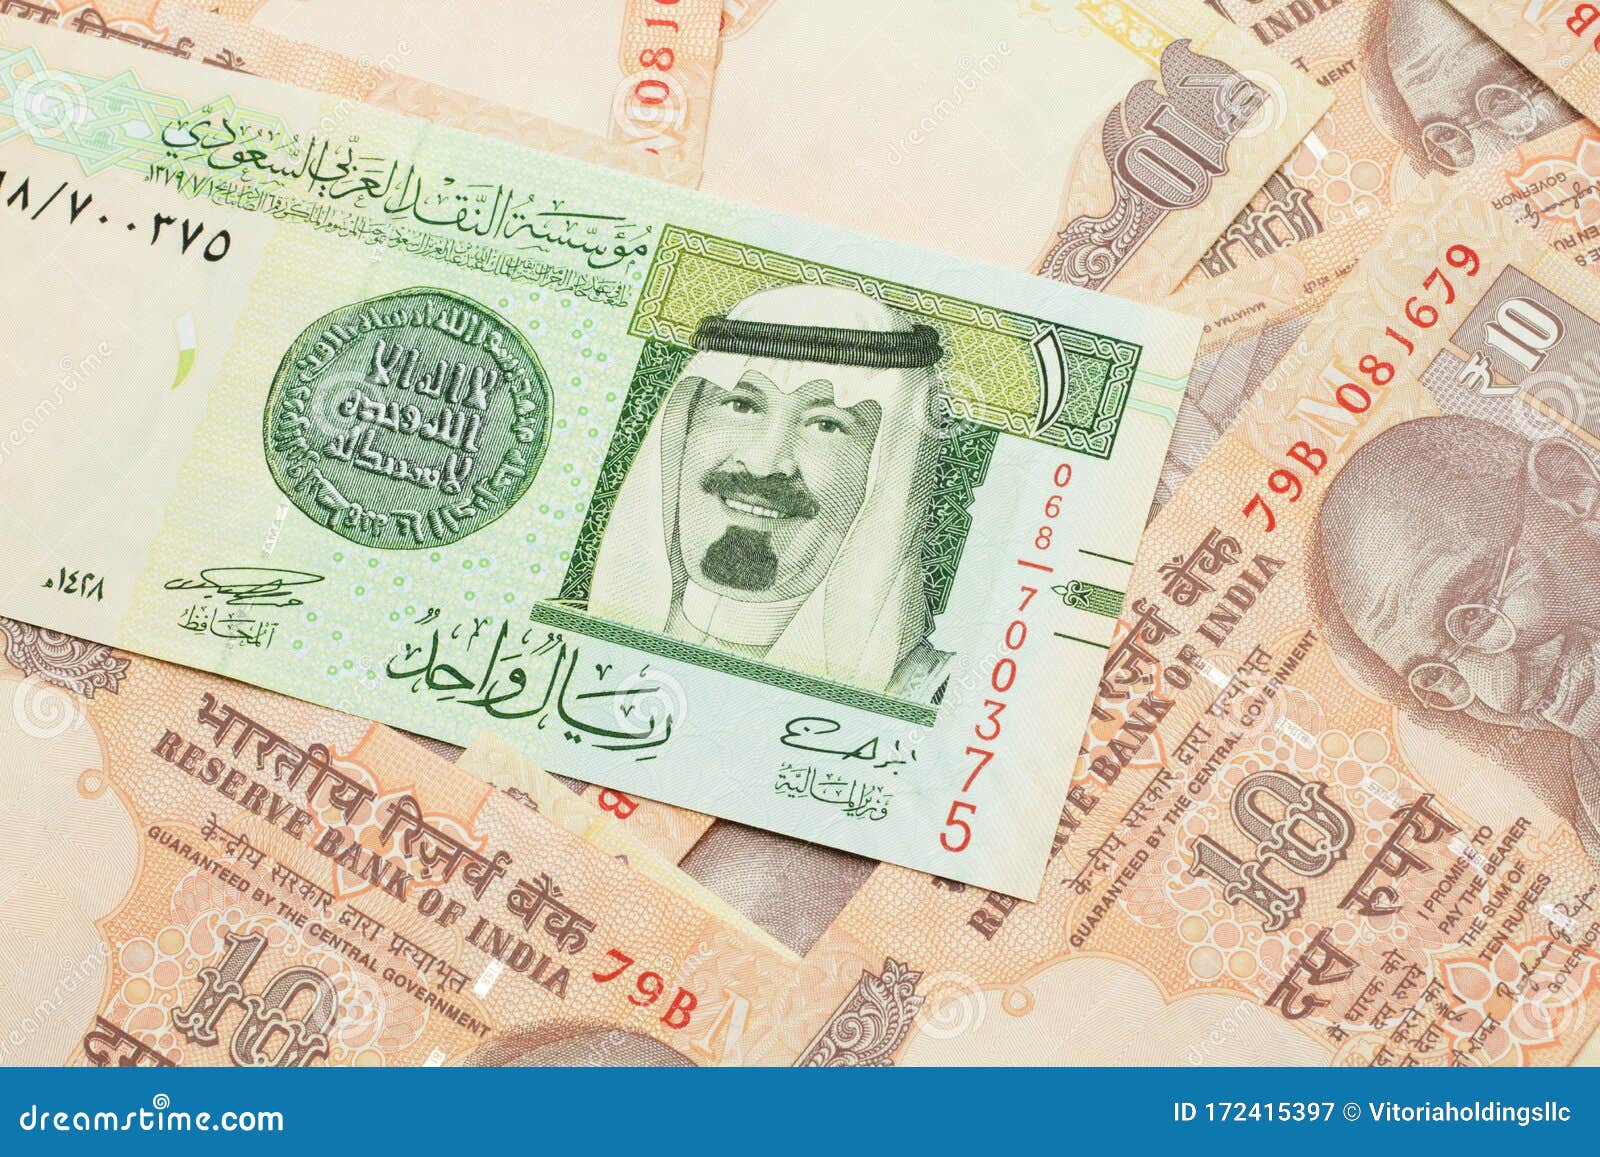 India saudi currency in Saudi Arabian